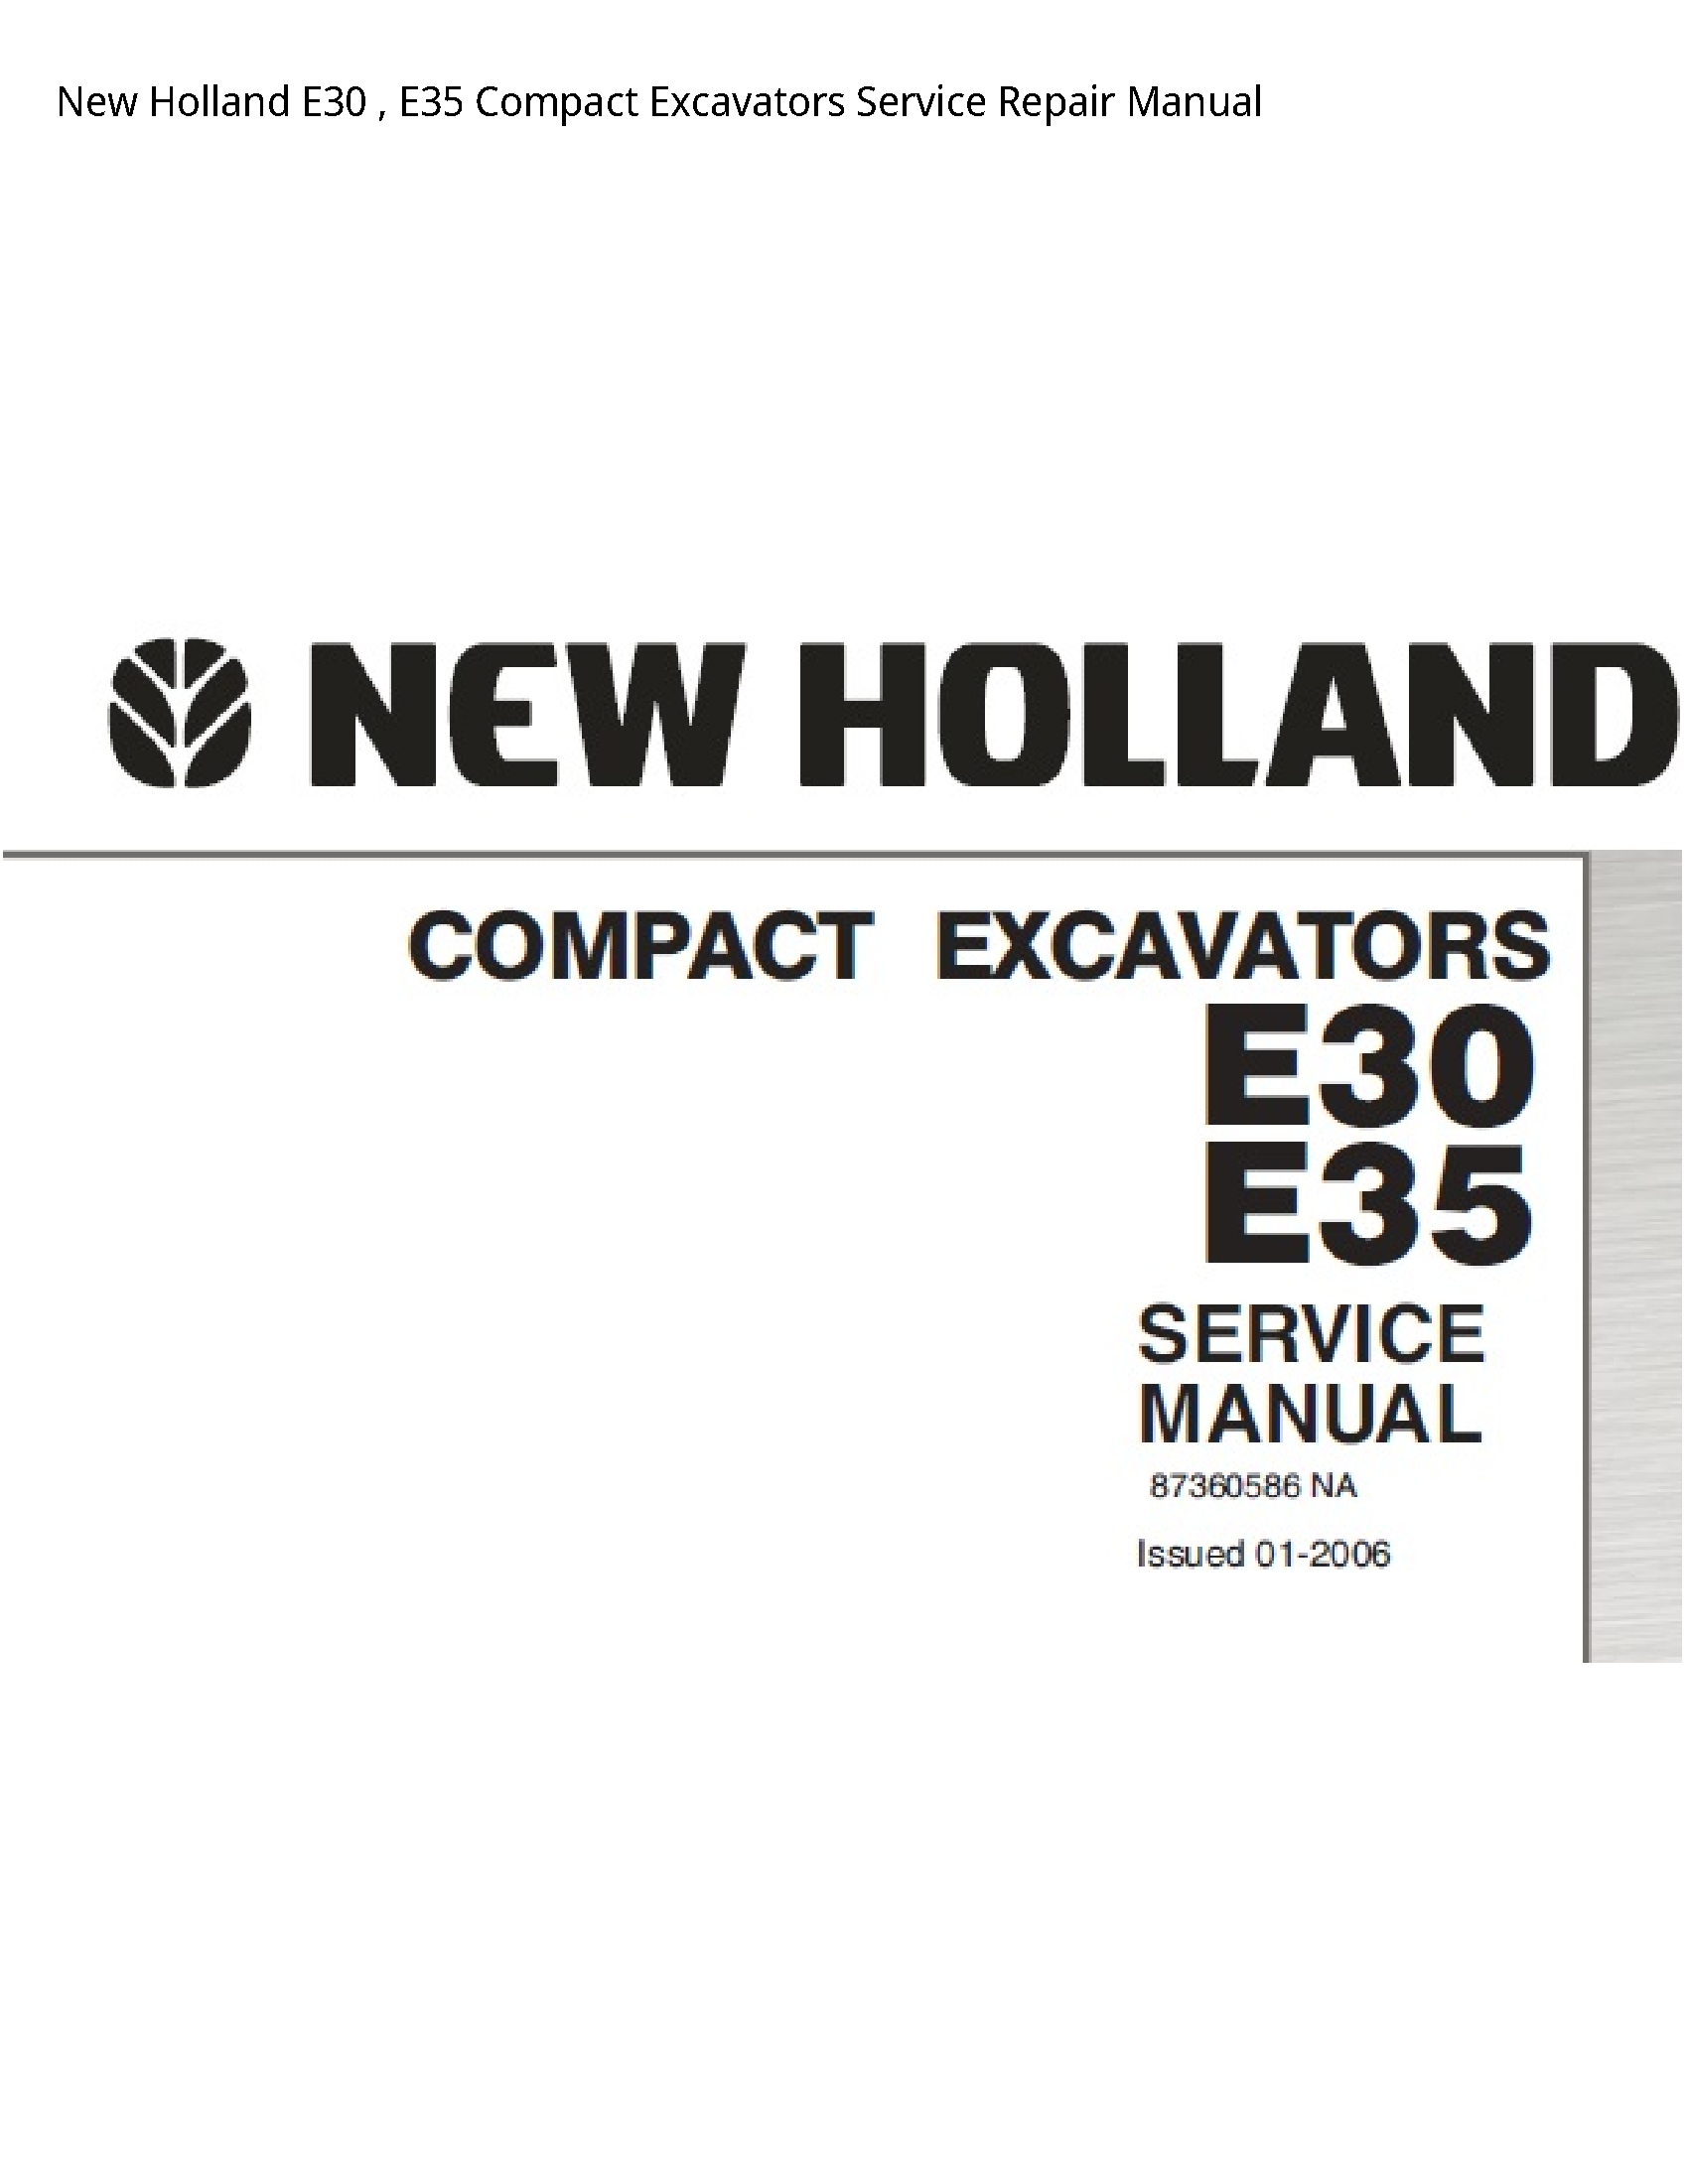 New Holland E30 Compact Excavators manual